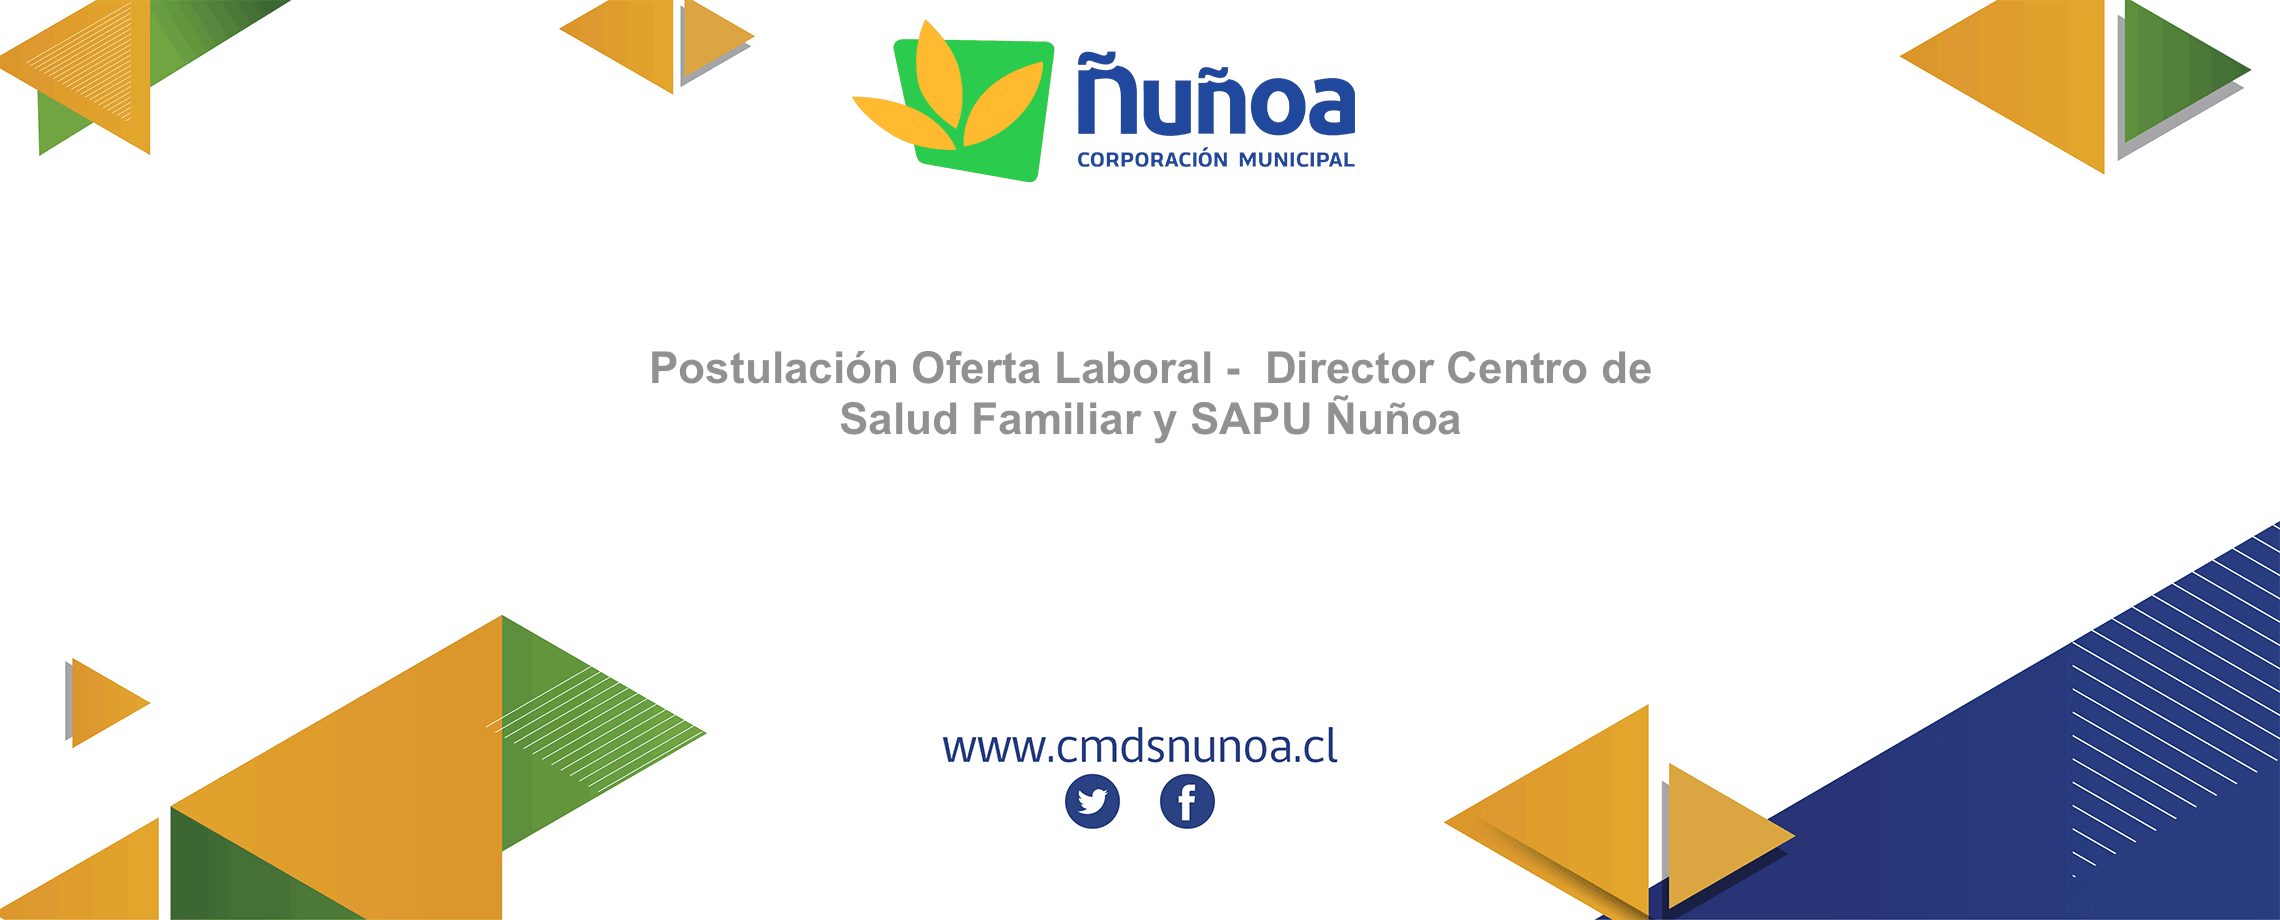 Postulación Oferta Laboral Director Centro de Salud Familiar y SAPU Ñuñoa